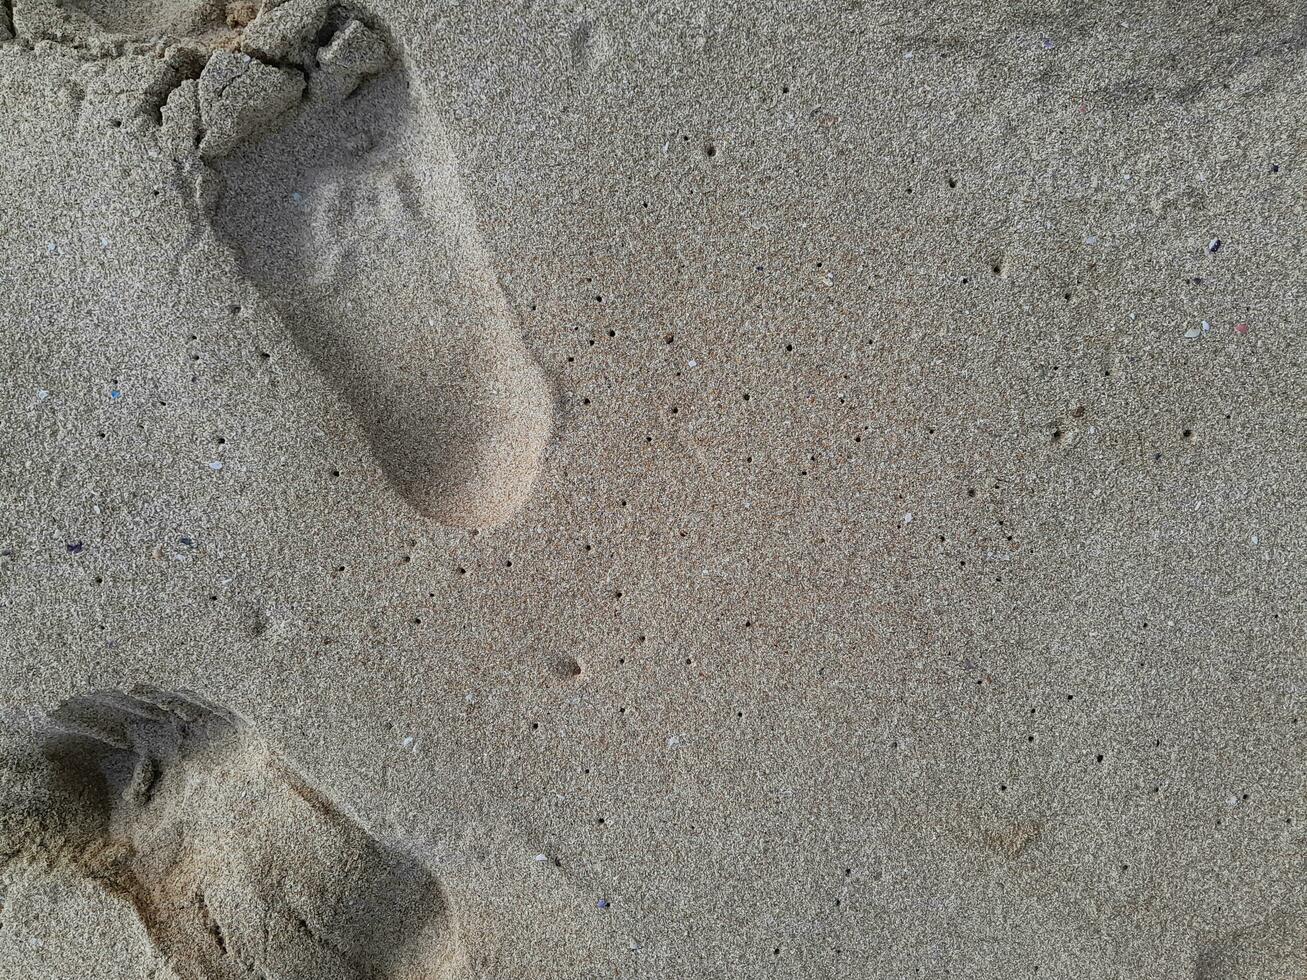 orma strutturato di umano piedi su il sabbia costiero foto